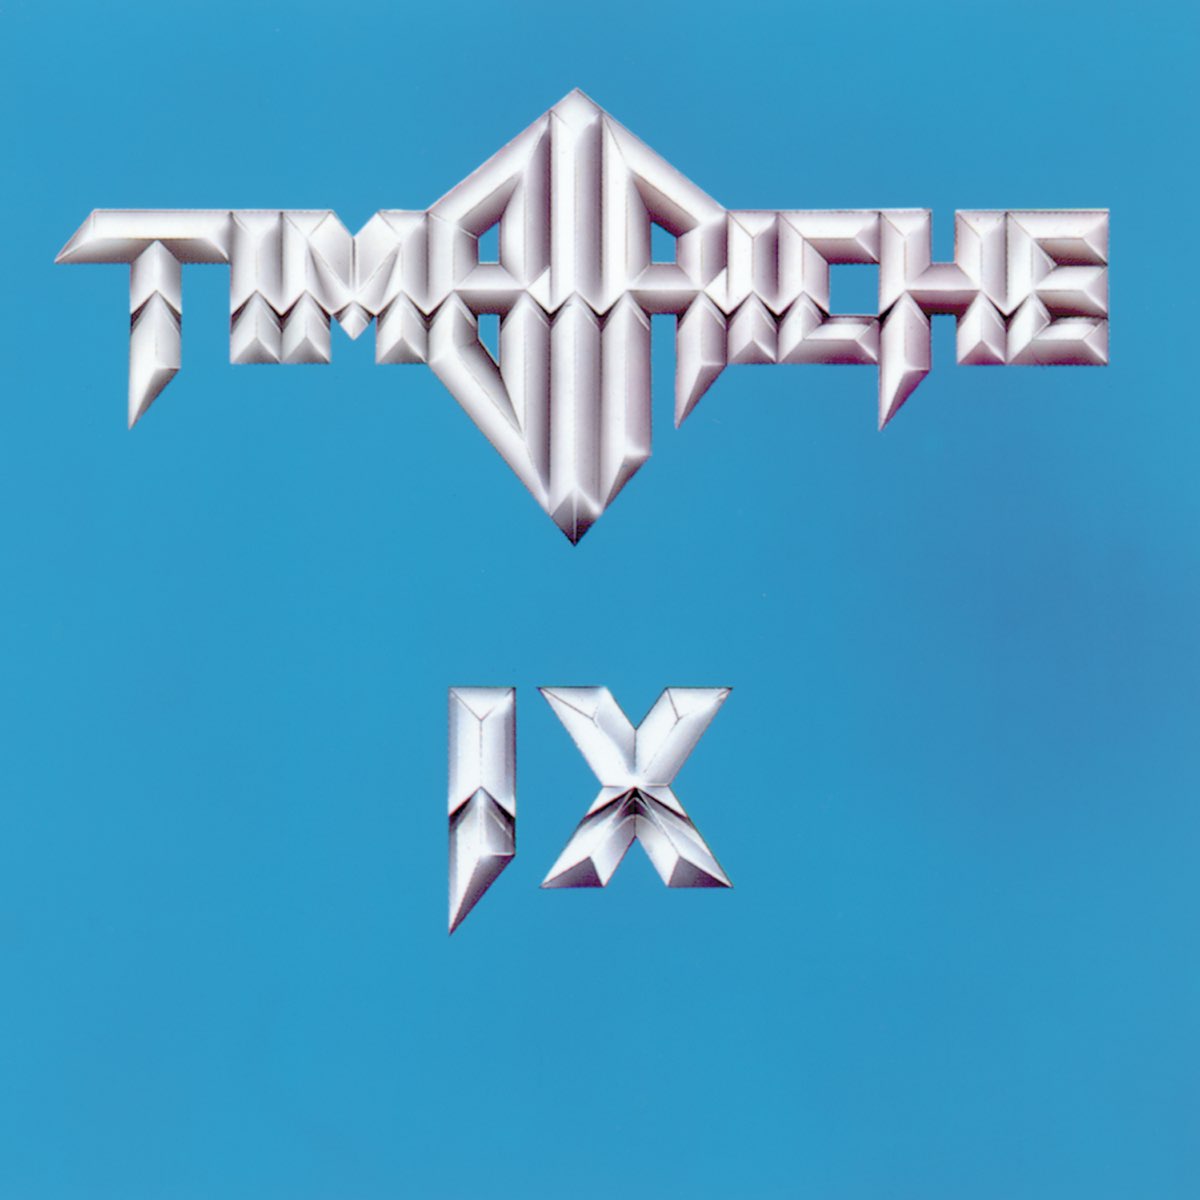 Timbiriche 9” álbum de Timbiriche en Apple Music